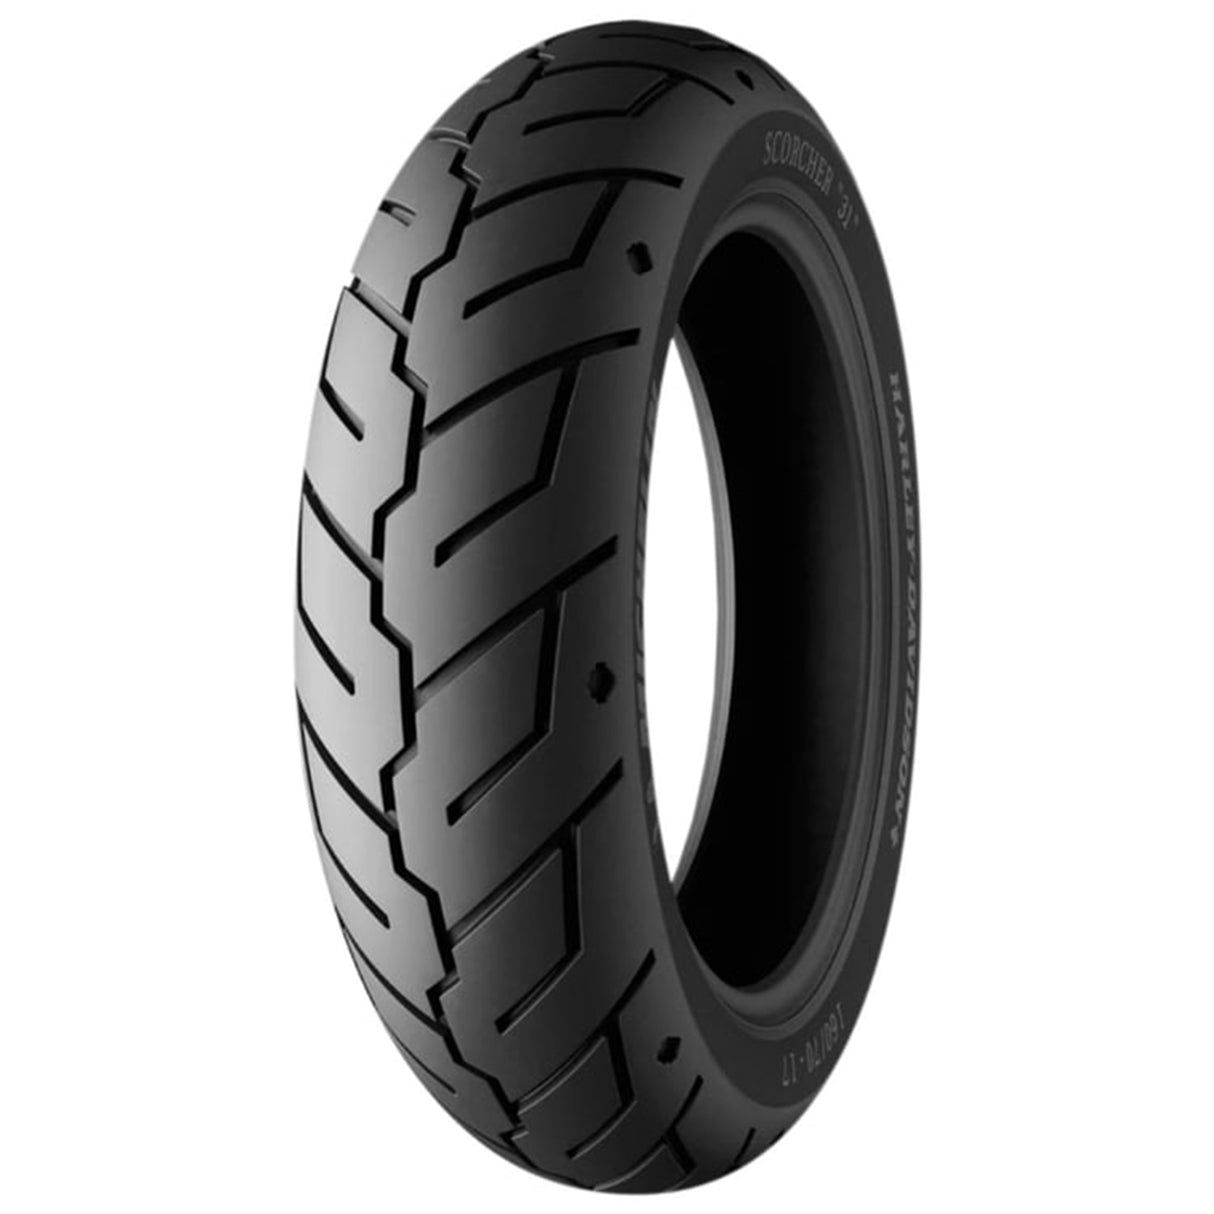 Michelin Scorcher 31 180/65 B 16 81H Rear Tyre